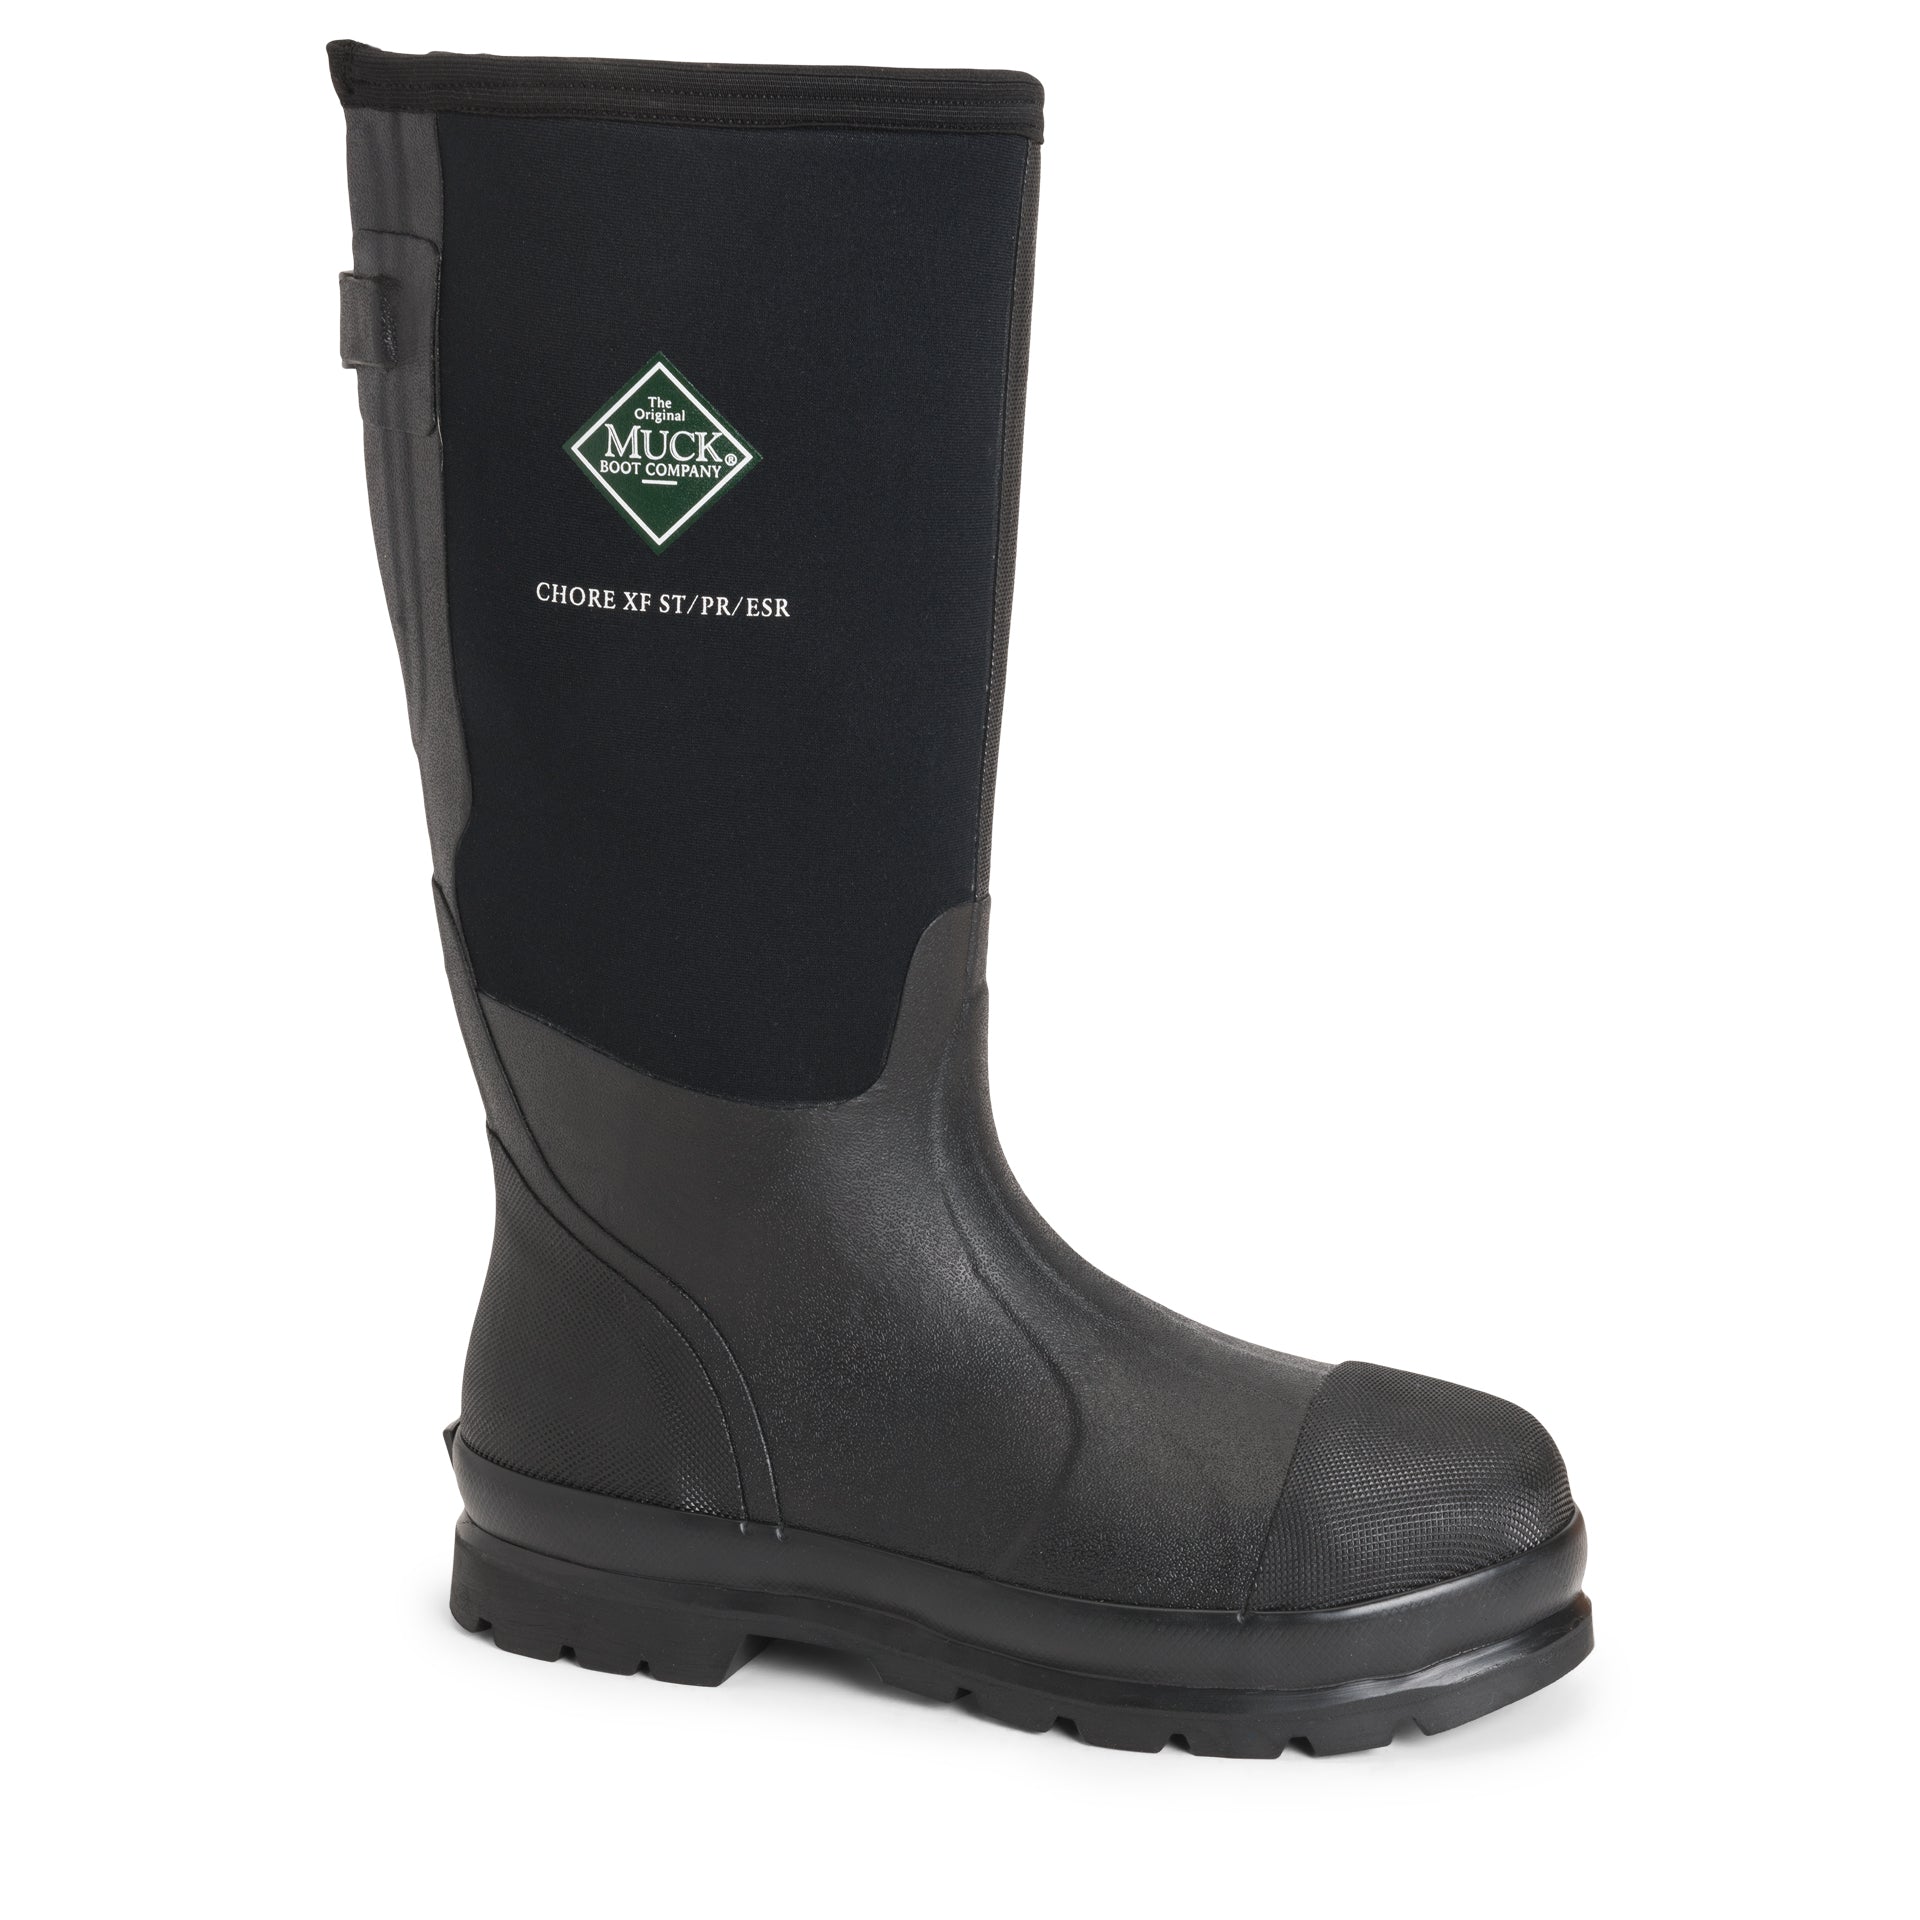 muck boots men's arctic sport steel toe waterproof work boots